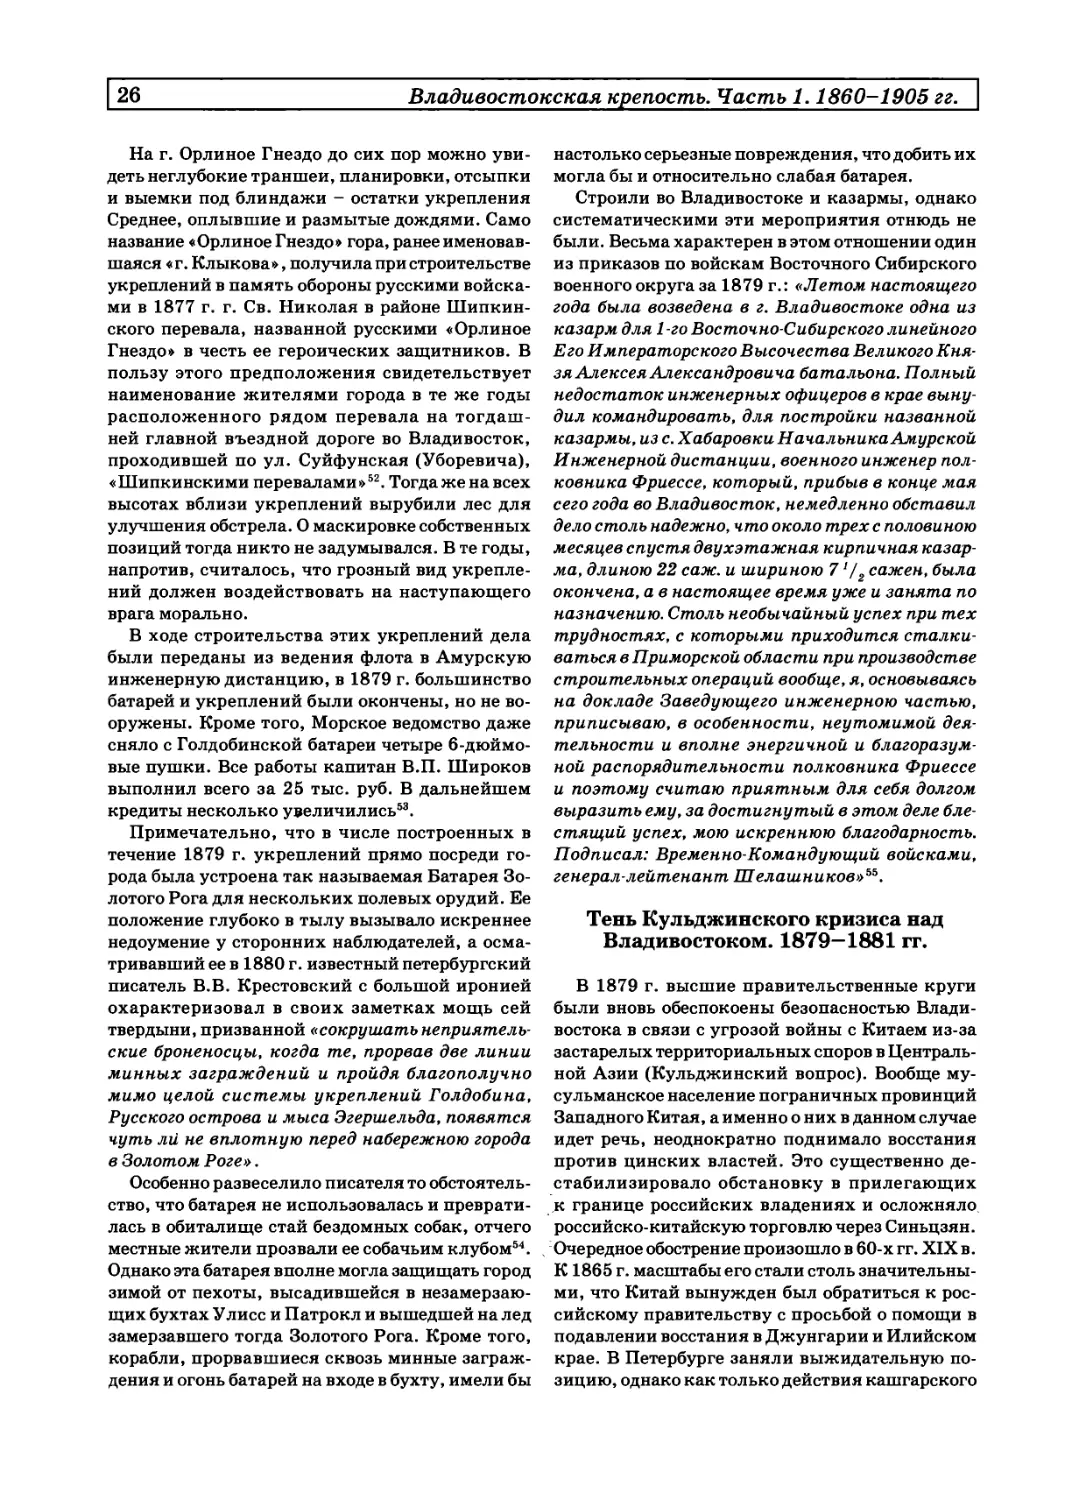 Тень Кульджинского кризиса над Владивостоком. 1879-1881 гг.